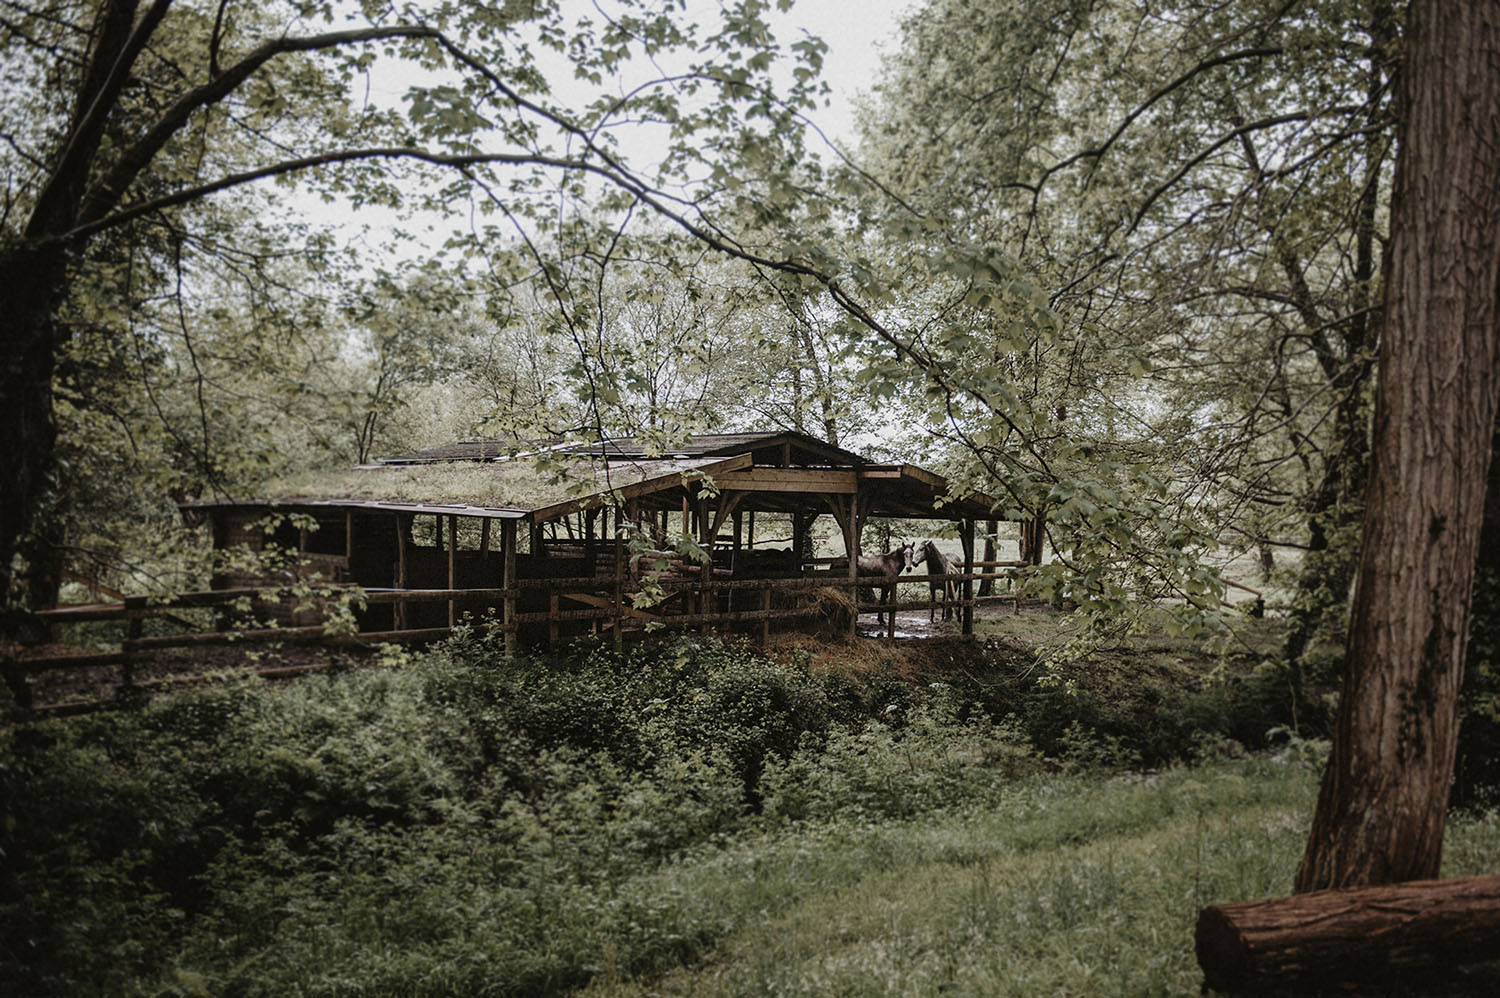 Coco Barn Wood Lodge, mariage folk au ranch à Angresse, Landes.